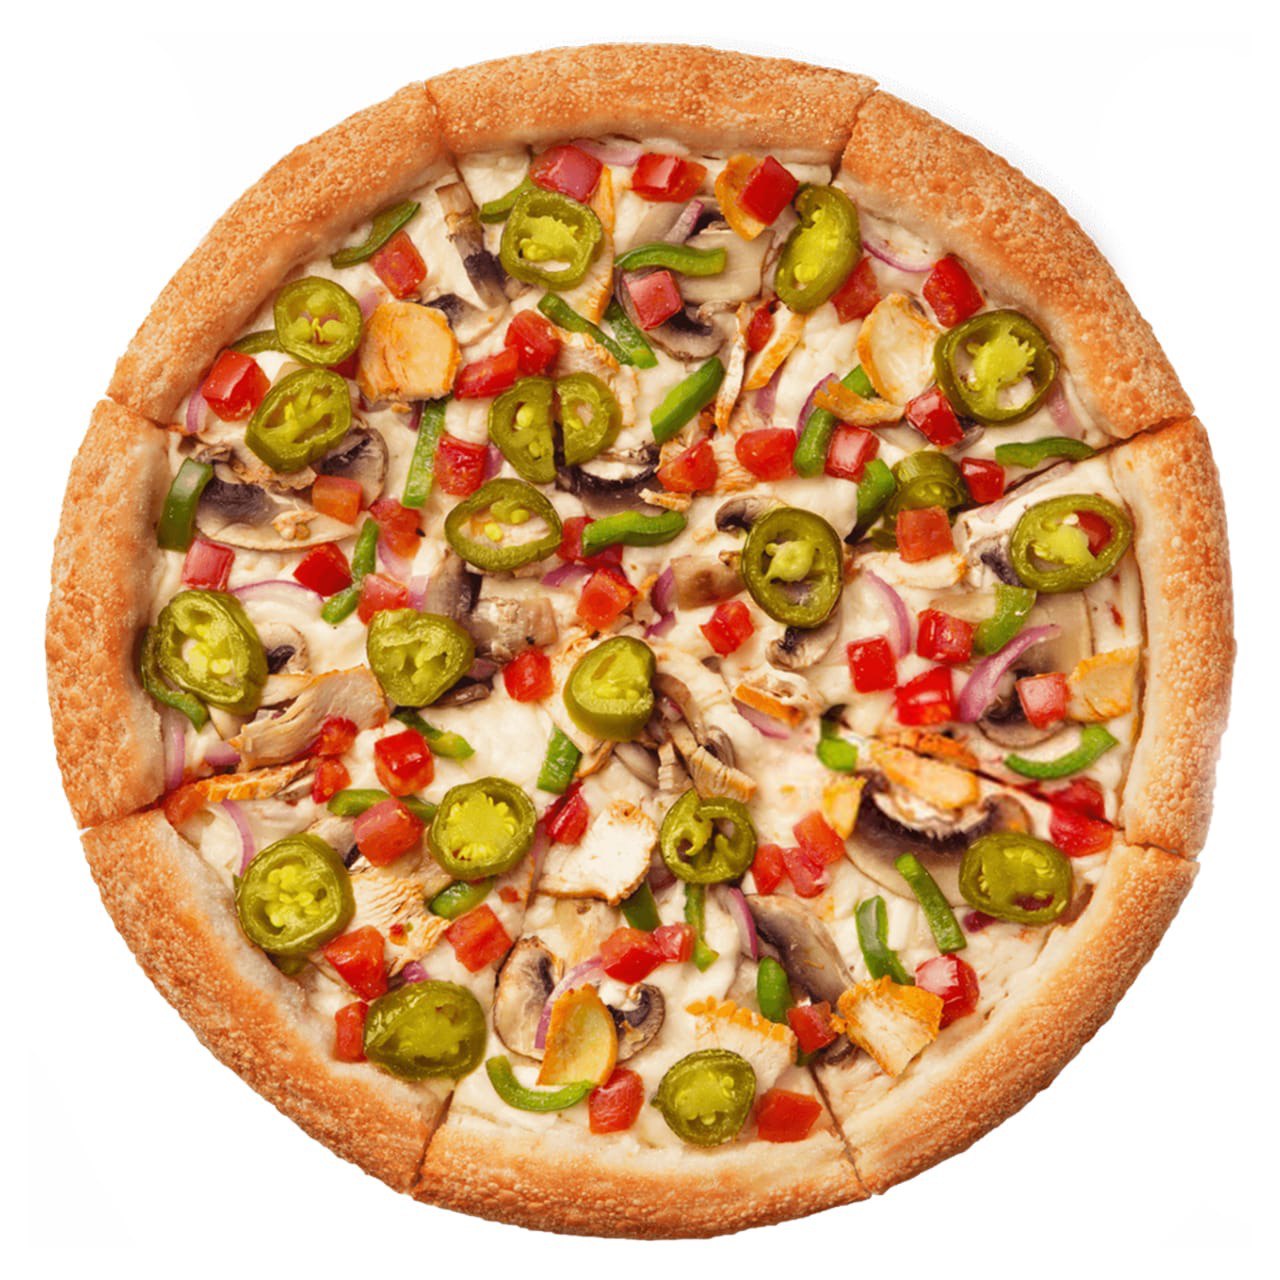 три пиццы одна с фруктами одна с овощами и соусом одна с мясом и сыром фото 100